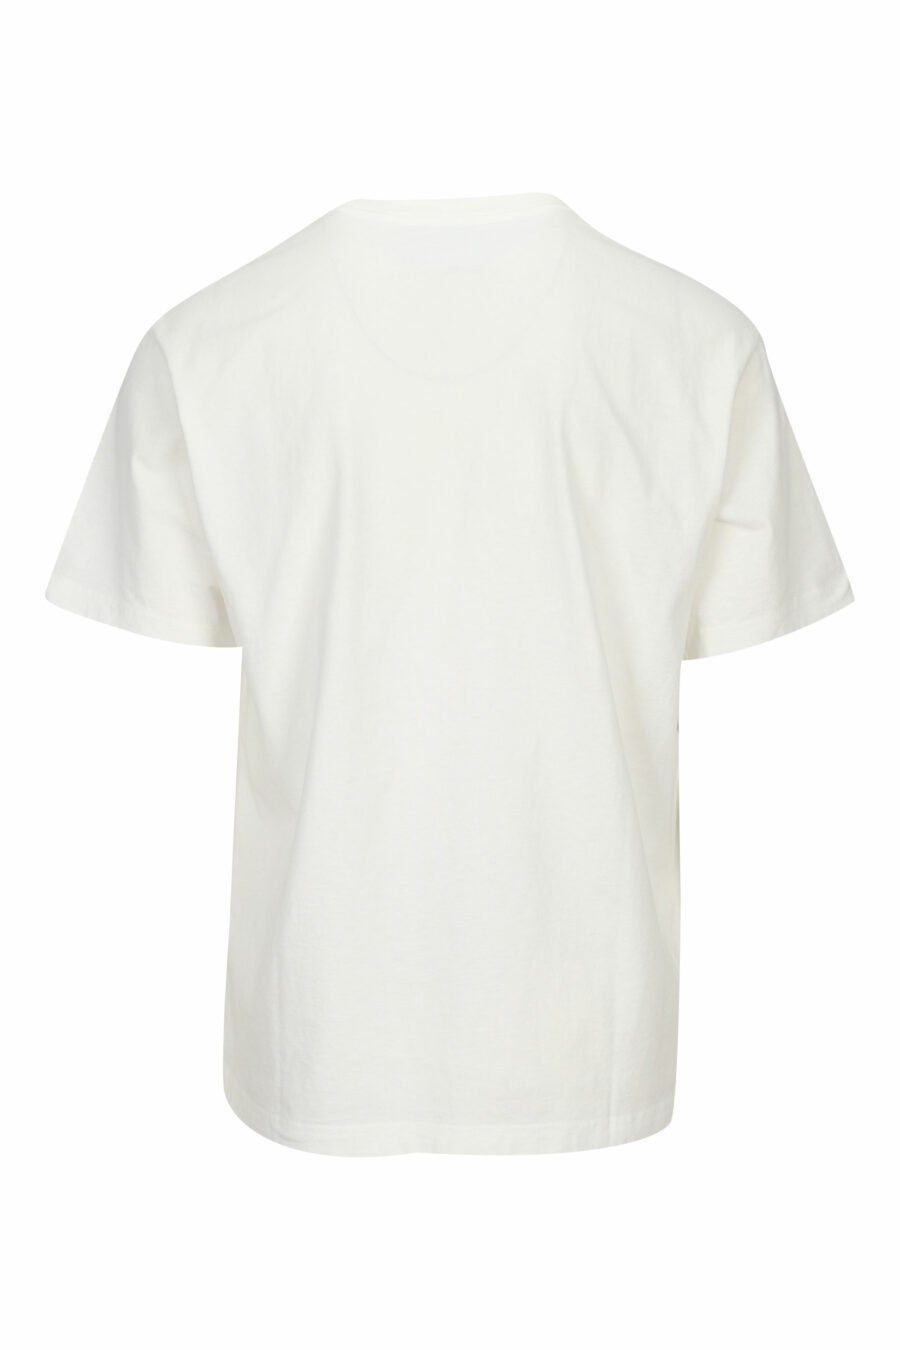 White T-shirt with diagonal maxilogo "kenzo orange" - 3612230627000 1